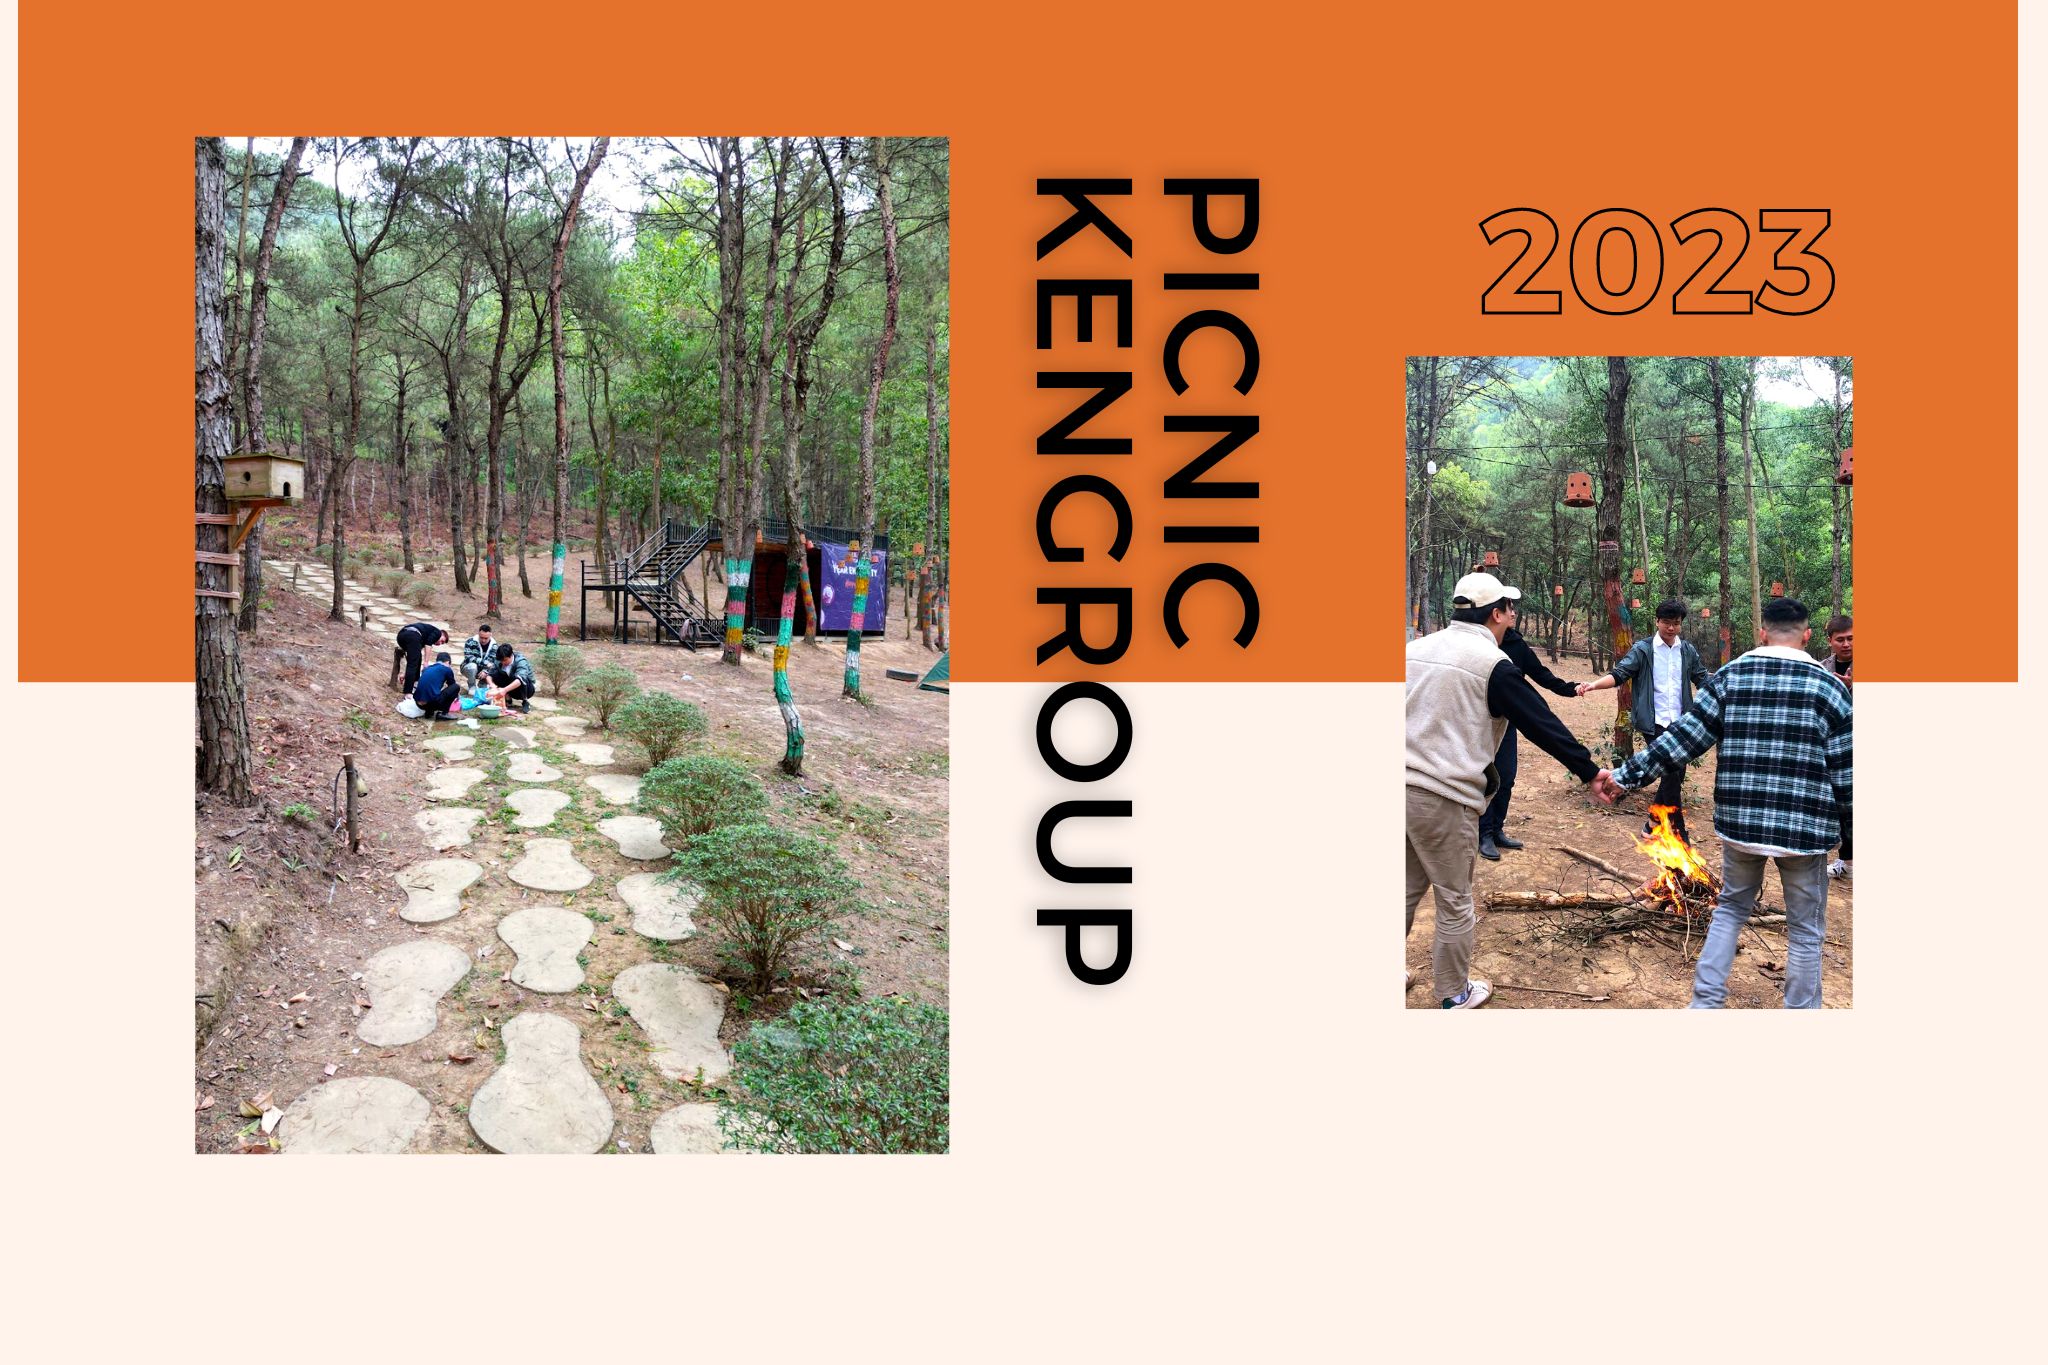 Chương trình Picnic KenGroup 2023 – gắn kết để trở thành gia đình